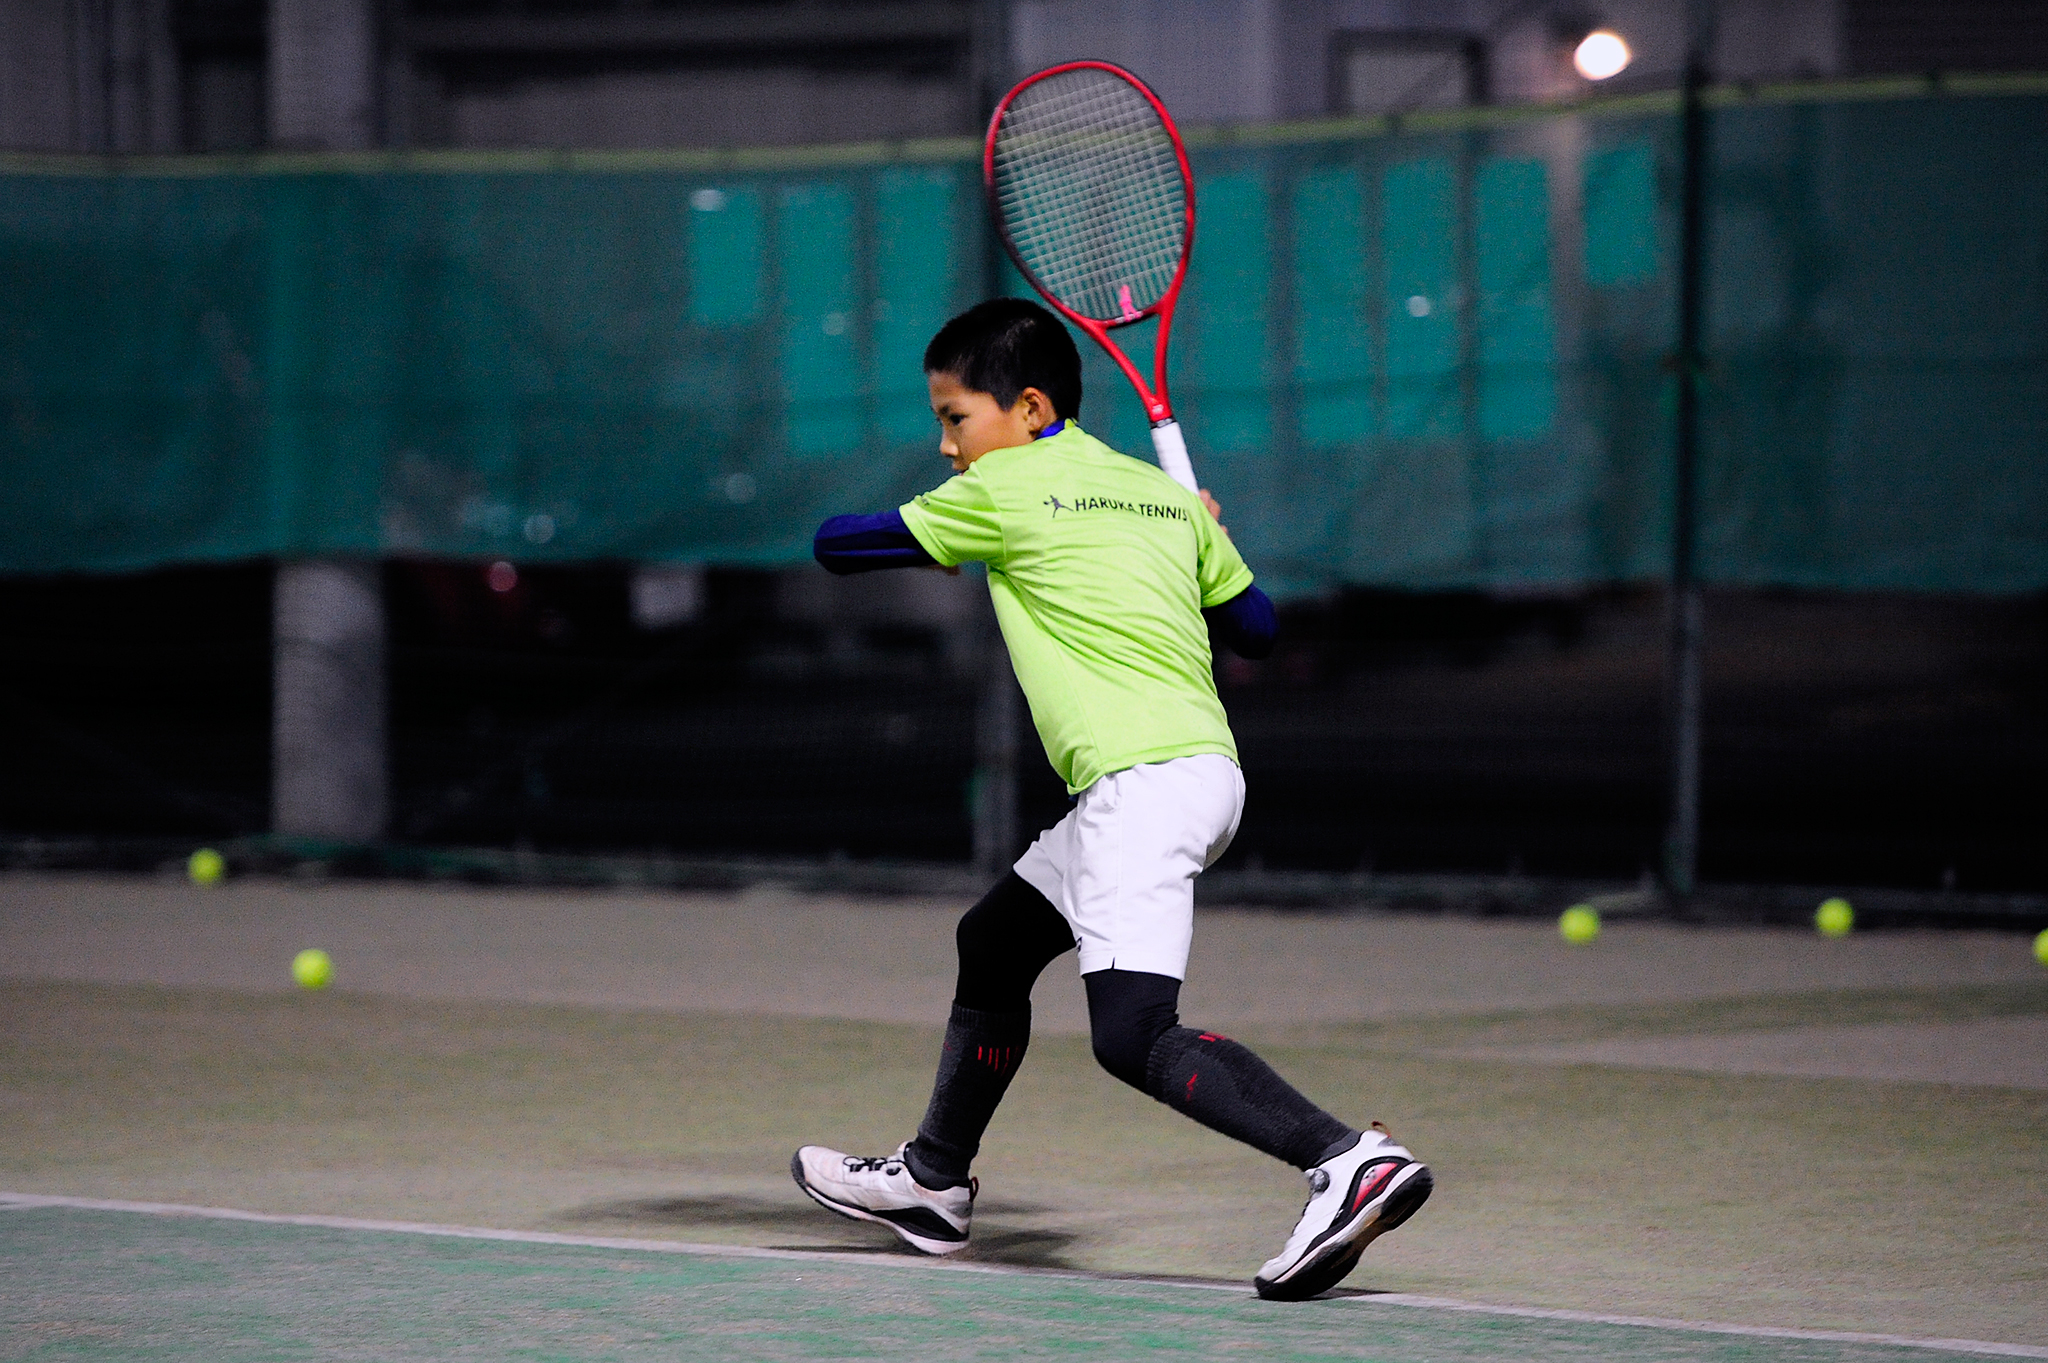 Tpp 田中歩コーチとのオンコートトレーニング 1 6 Haruka Tennis